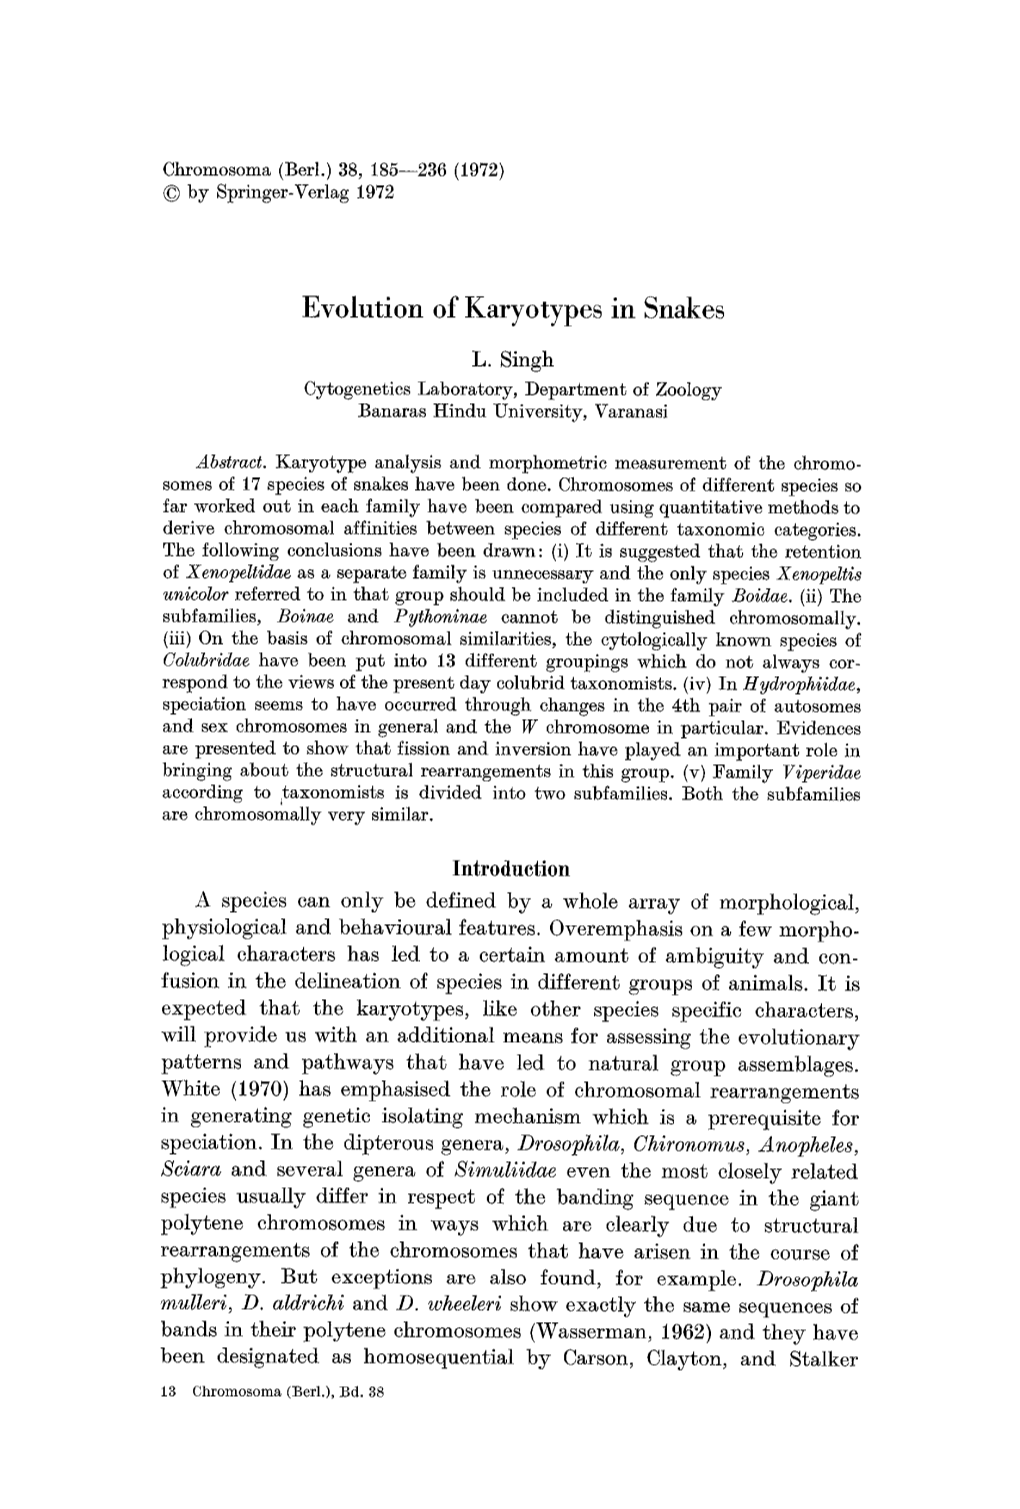 Evolution of Karyotypes in Snakes